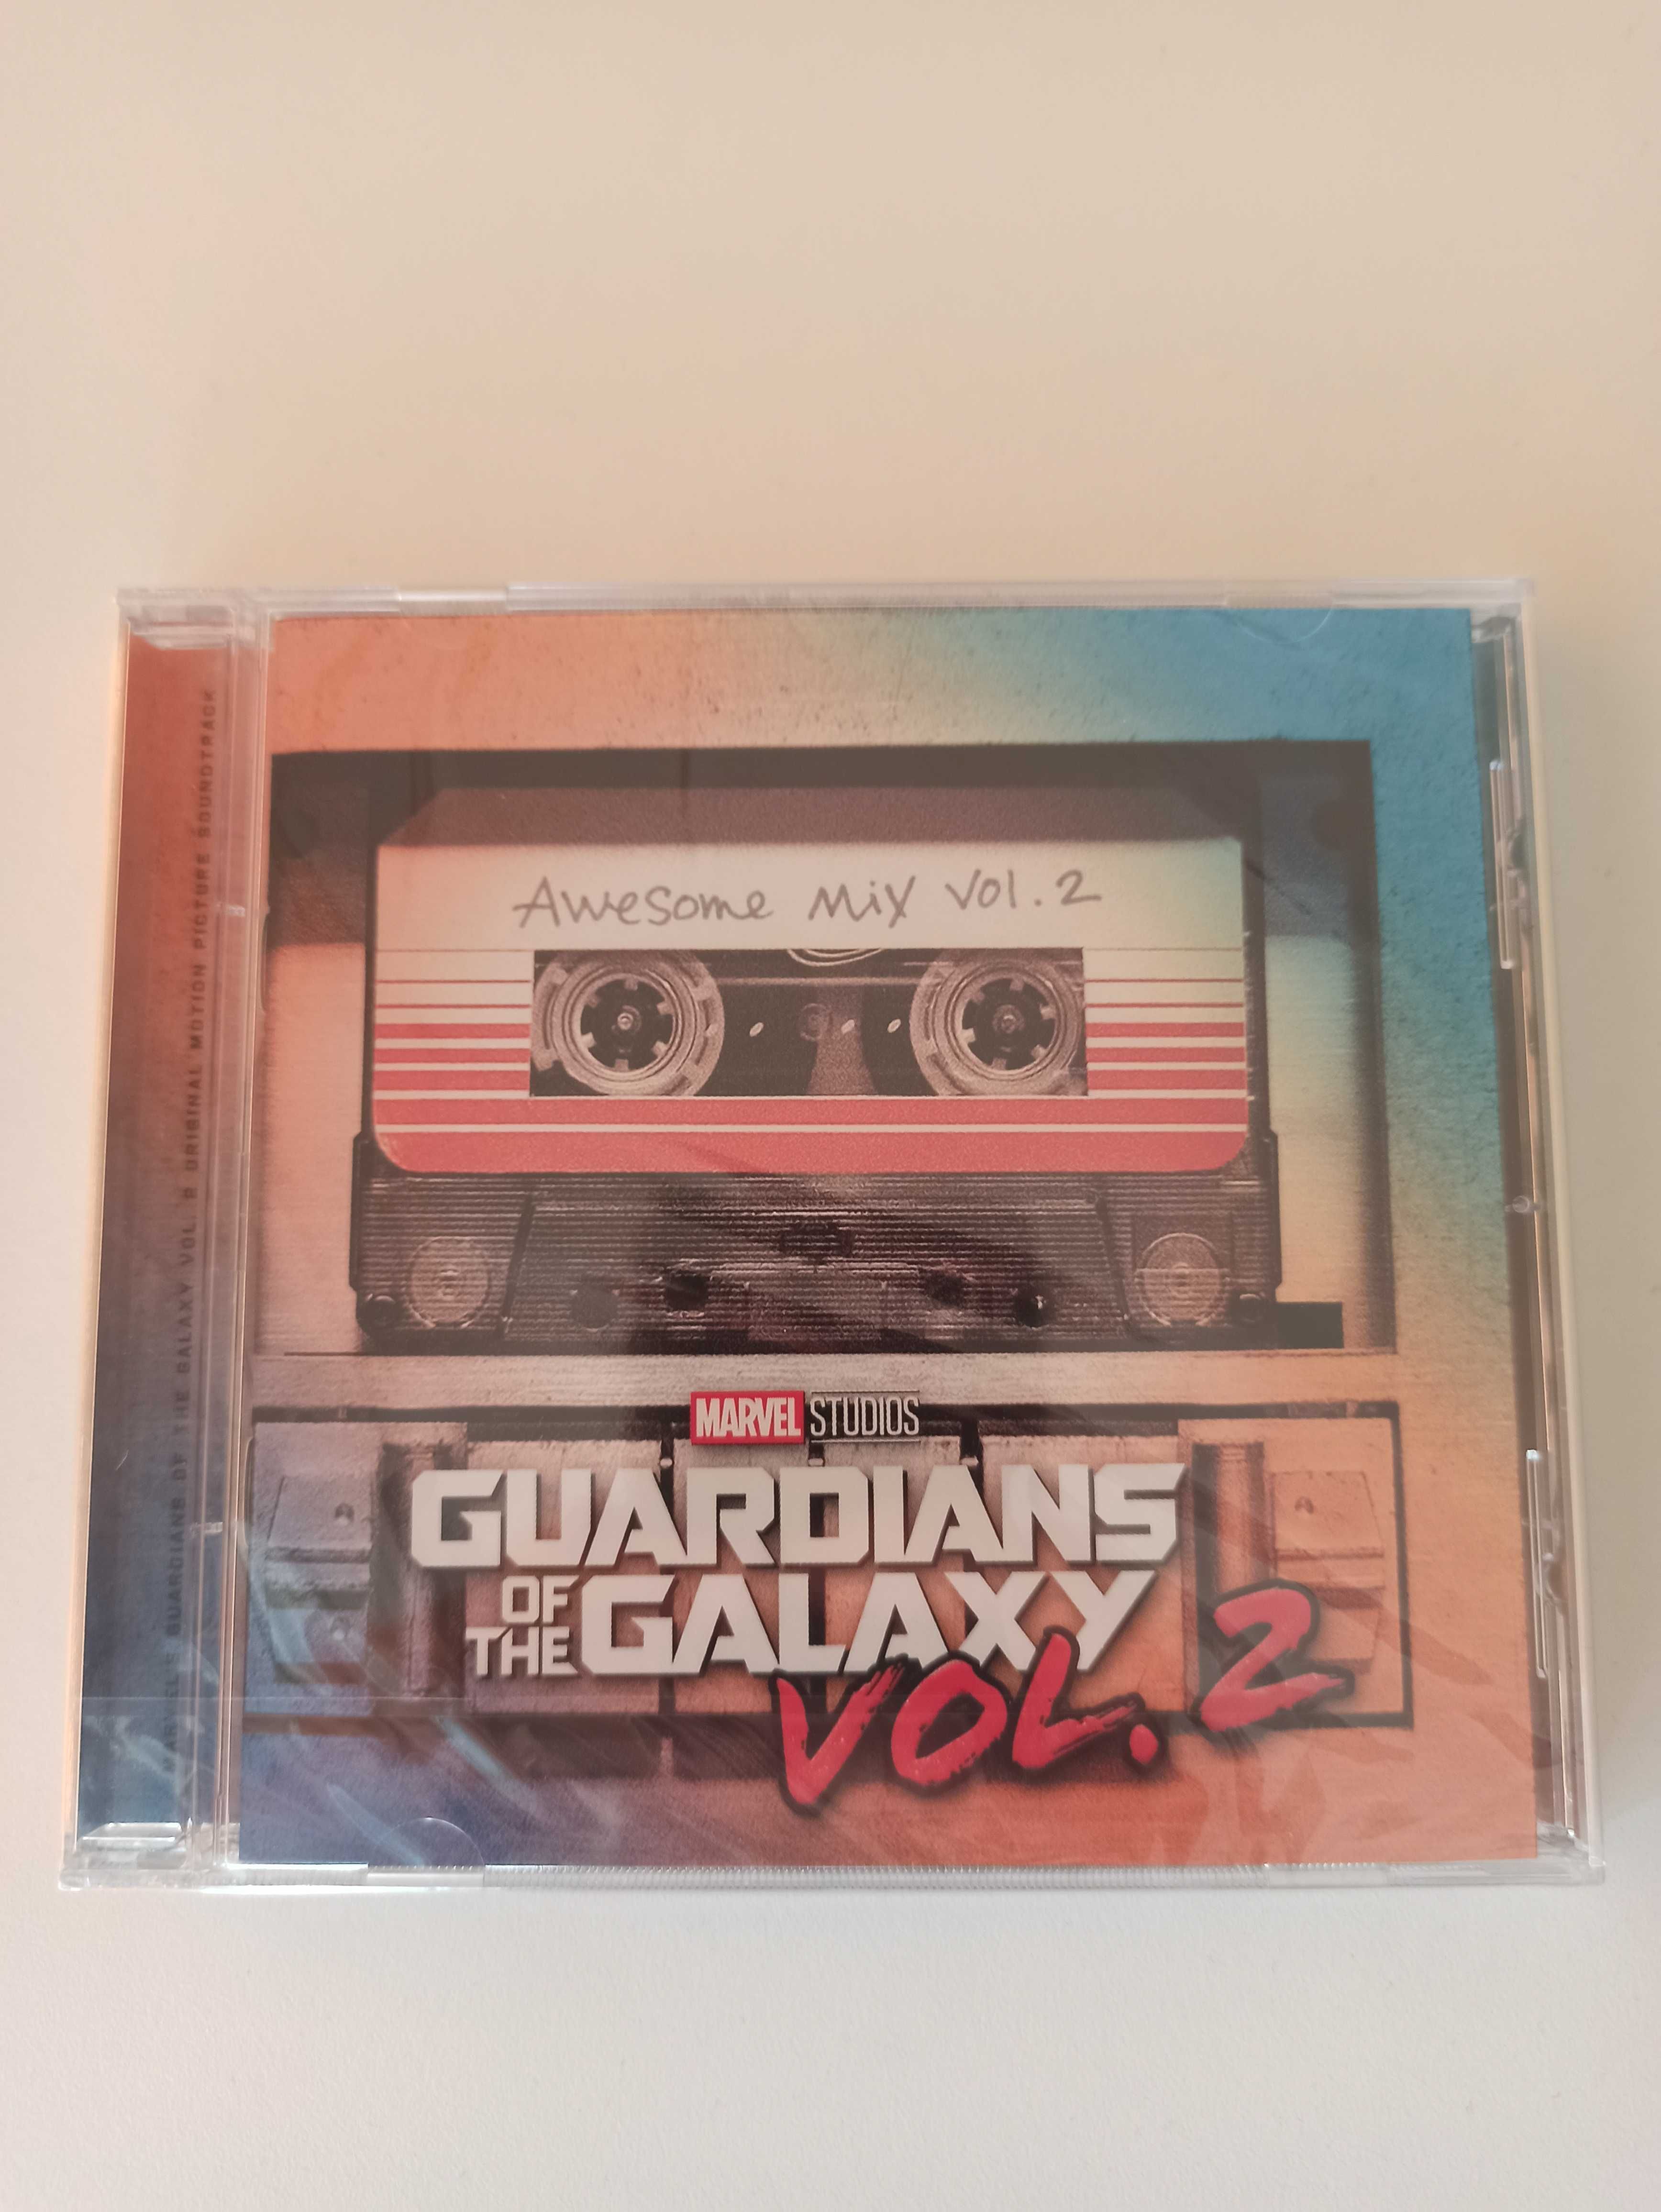 Strażnicy Galaktyki vol. 2 muzyka z Guardian of the Galaxy Awesome Mix